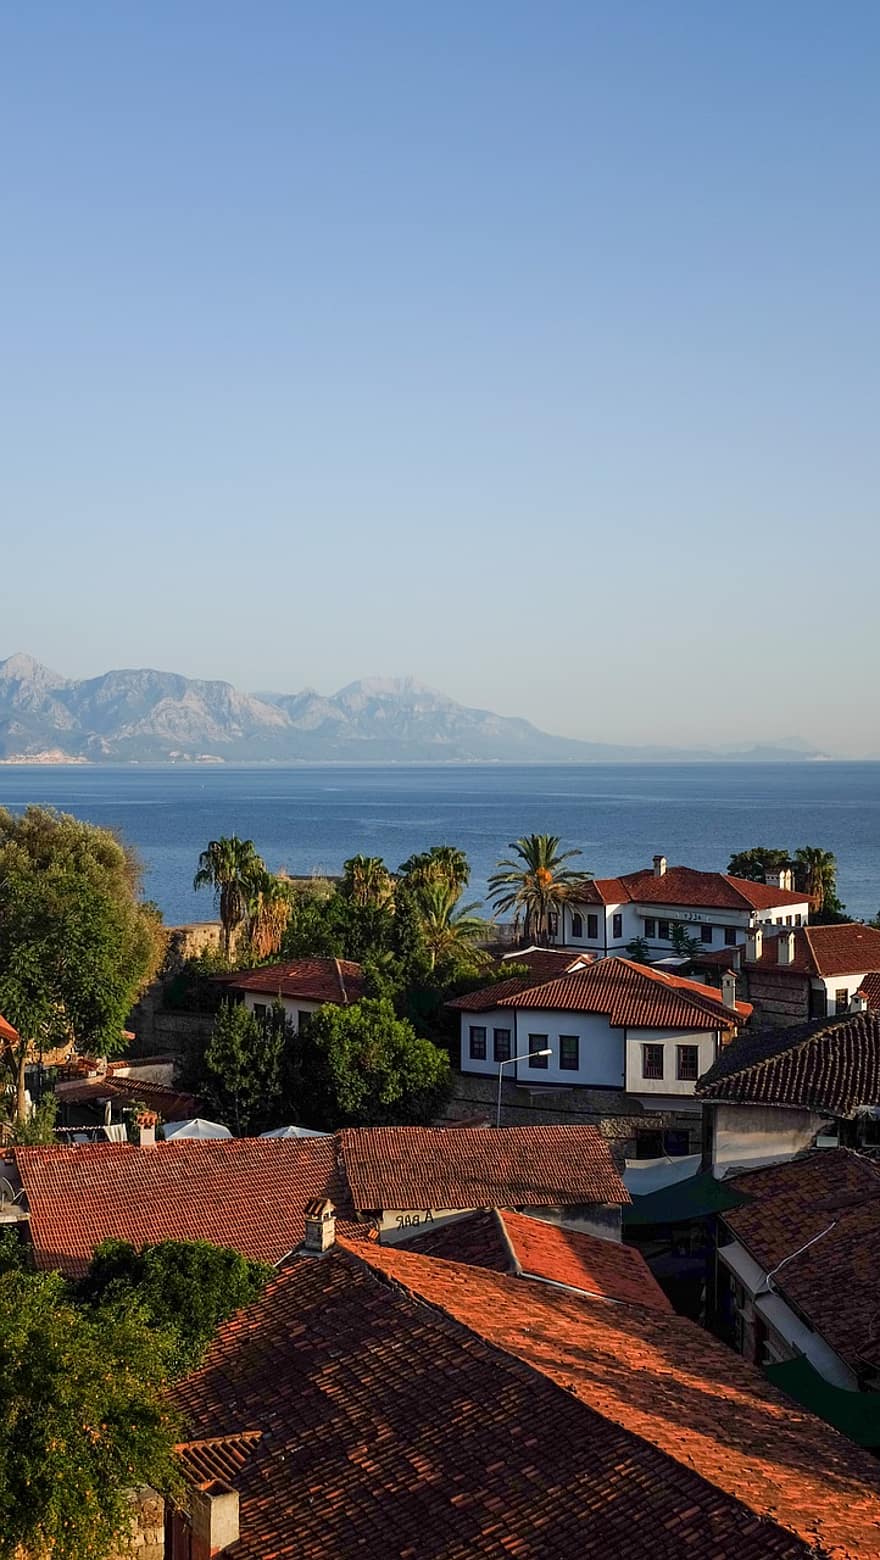 Antalya, tacchino, cittadina, architettura, mare, montagne, case, vecchie case, città vecchia, tetto, estate